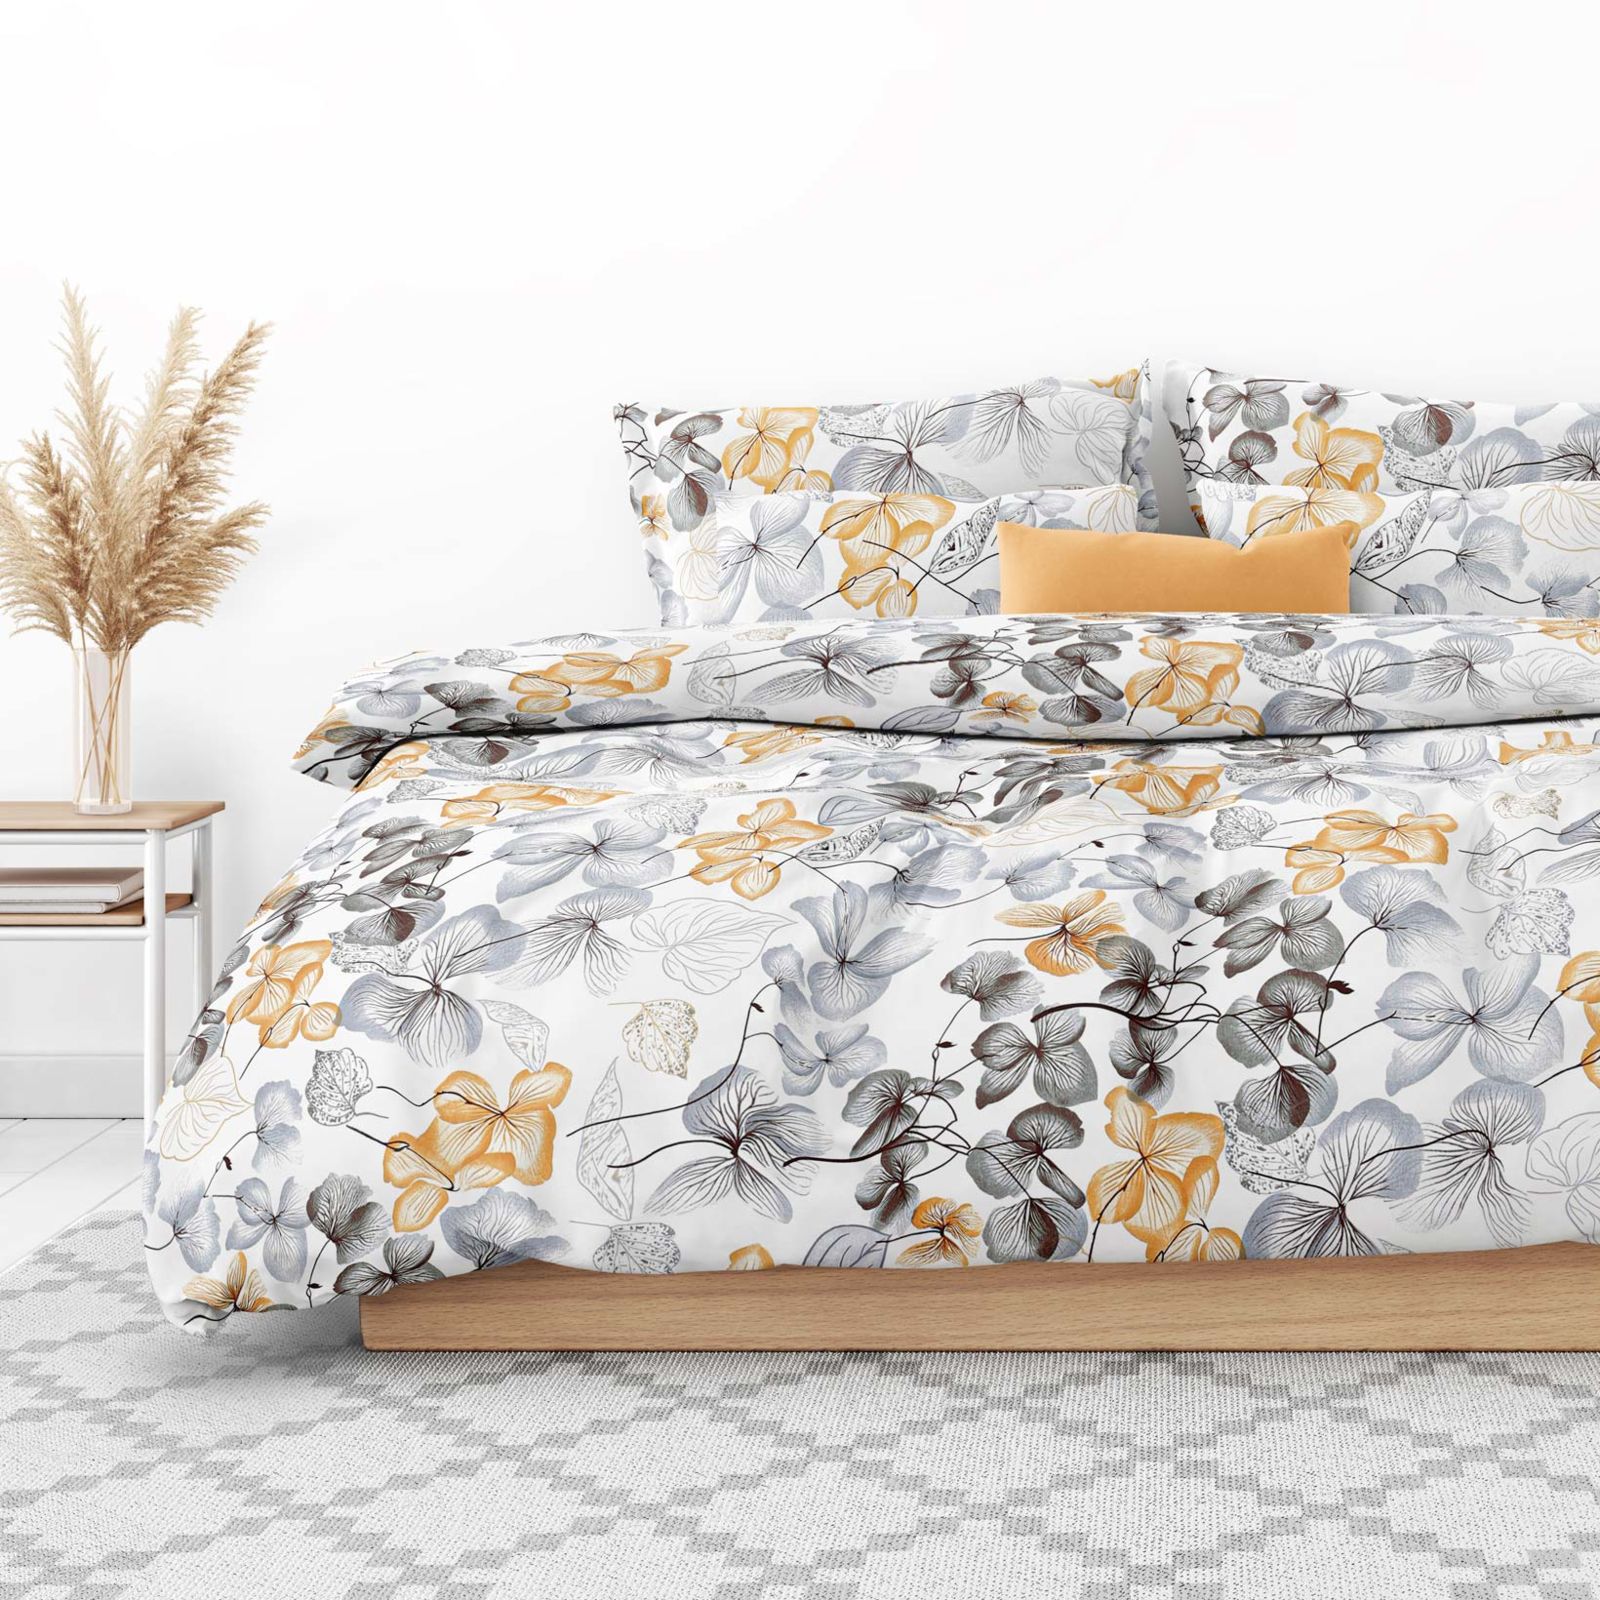 Bavlnené posteľné obliečky - sivo-hnedé kvety s listami